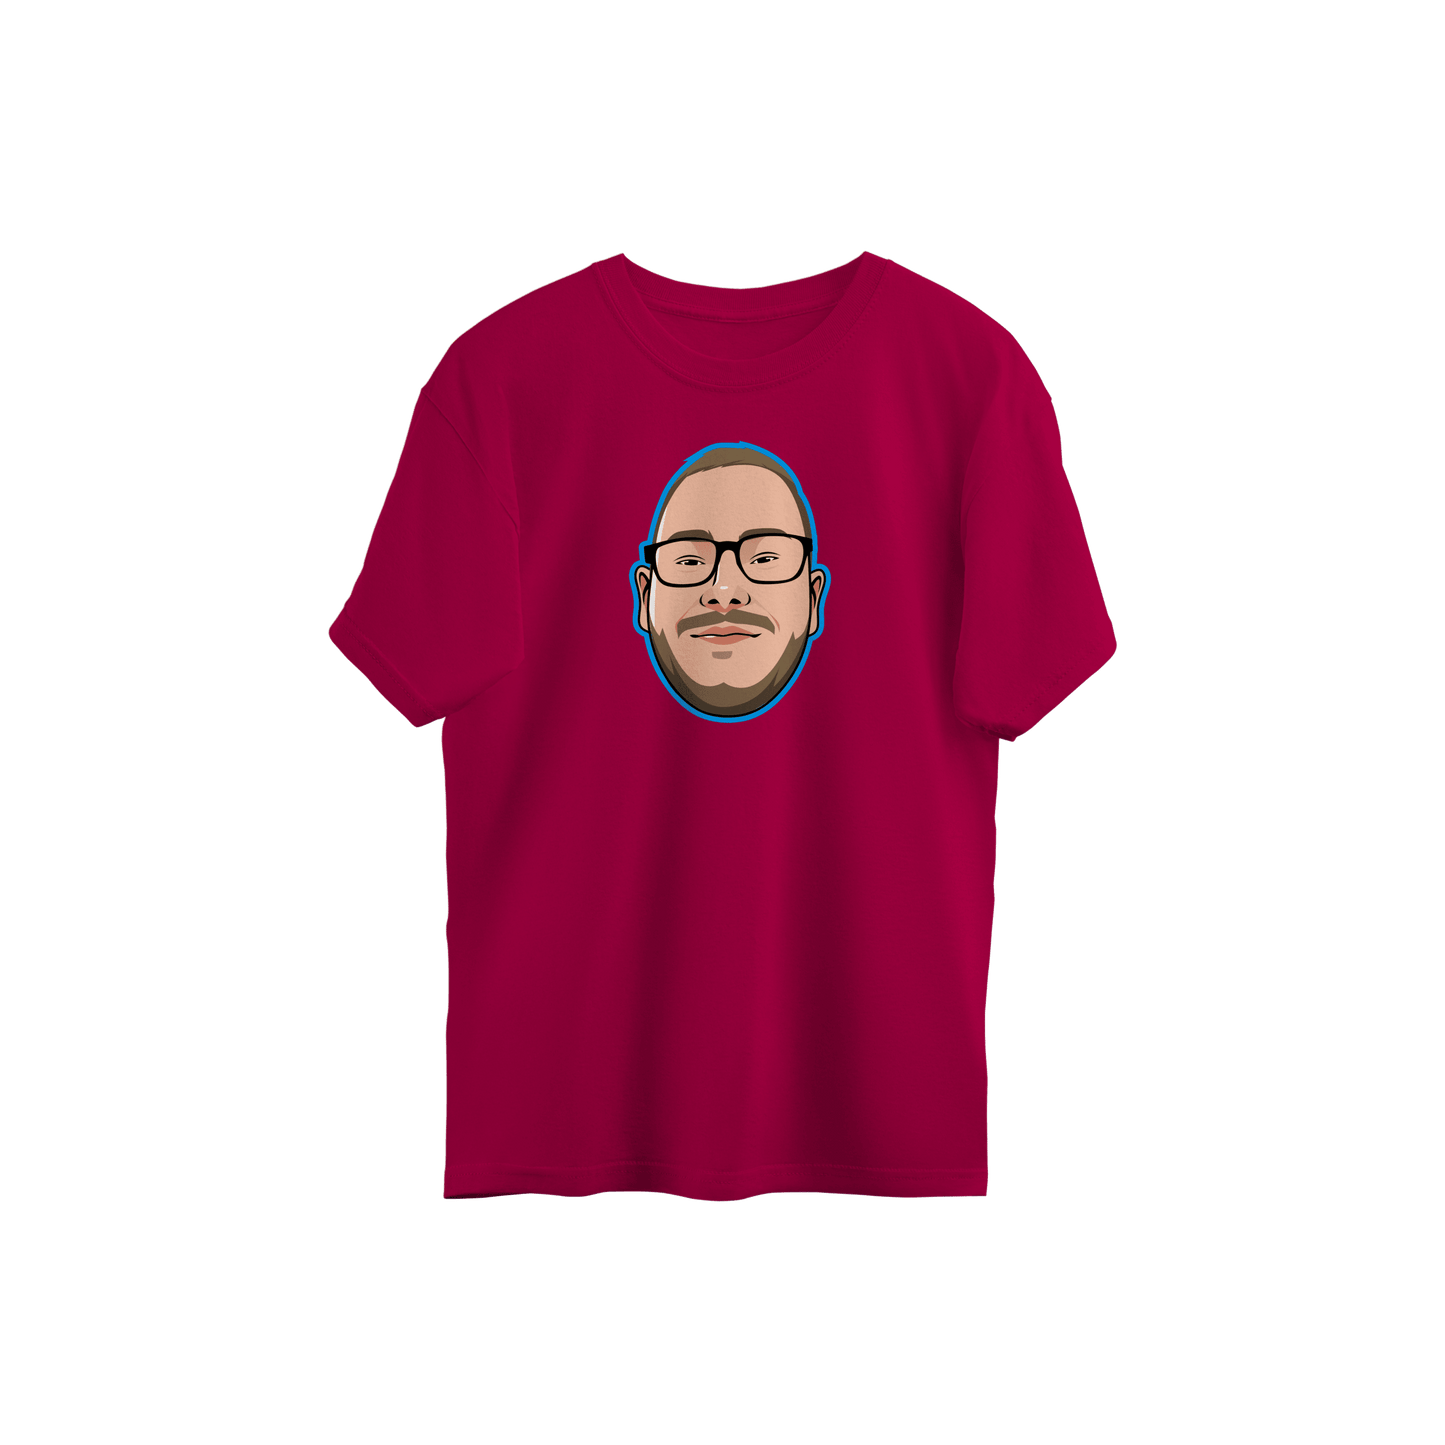 Erdiklowman T-Shirt: StopMobning